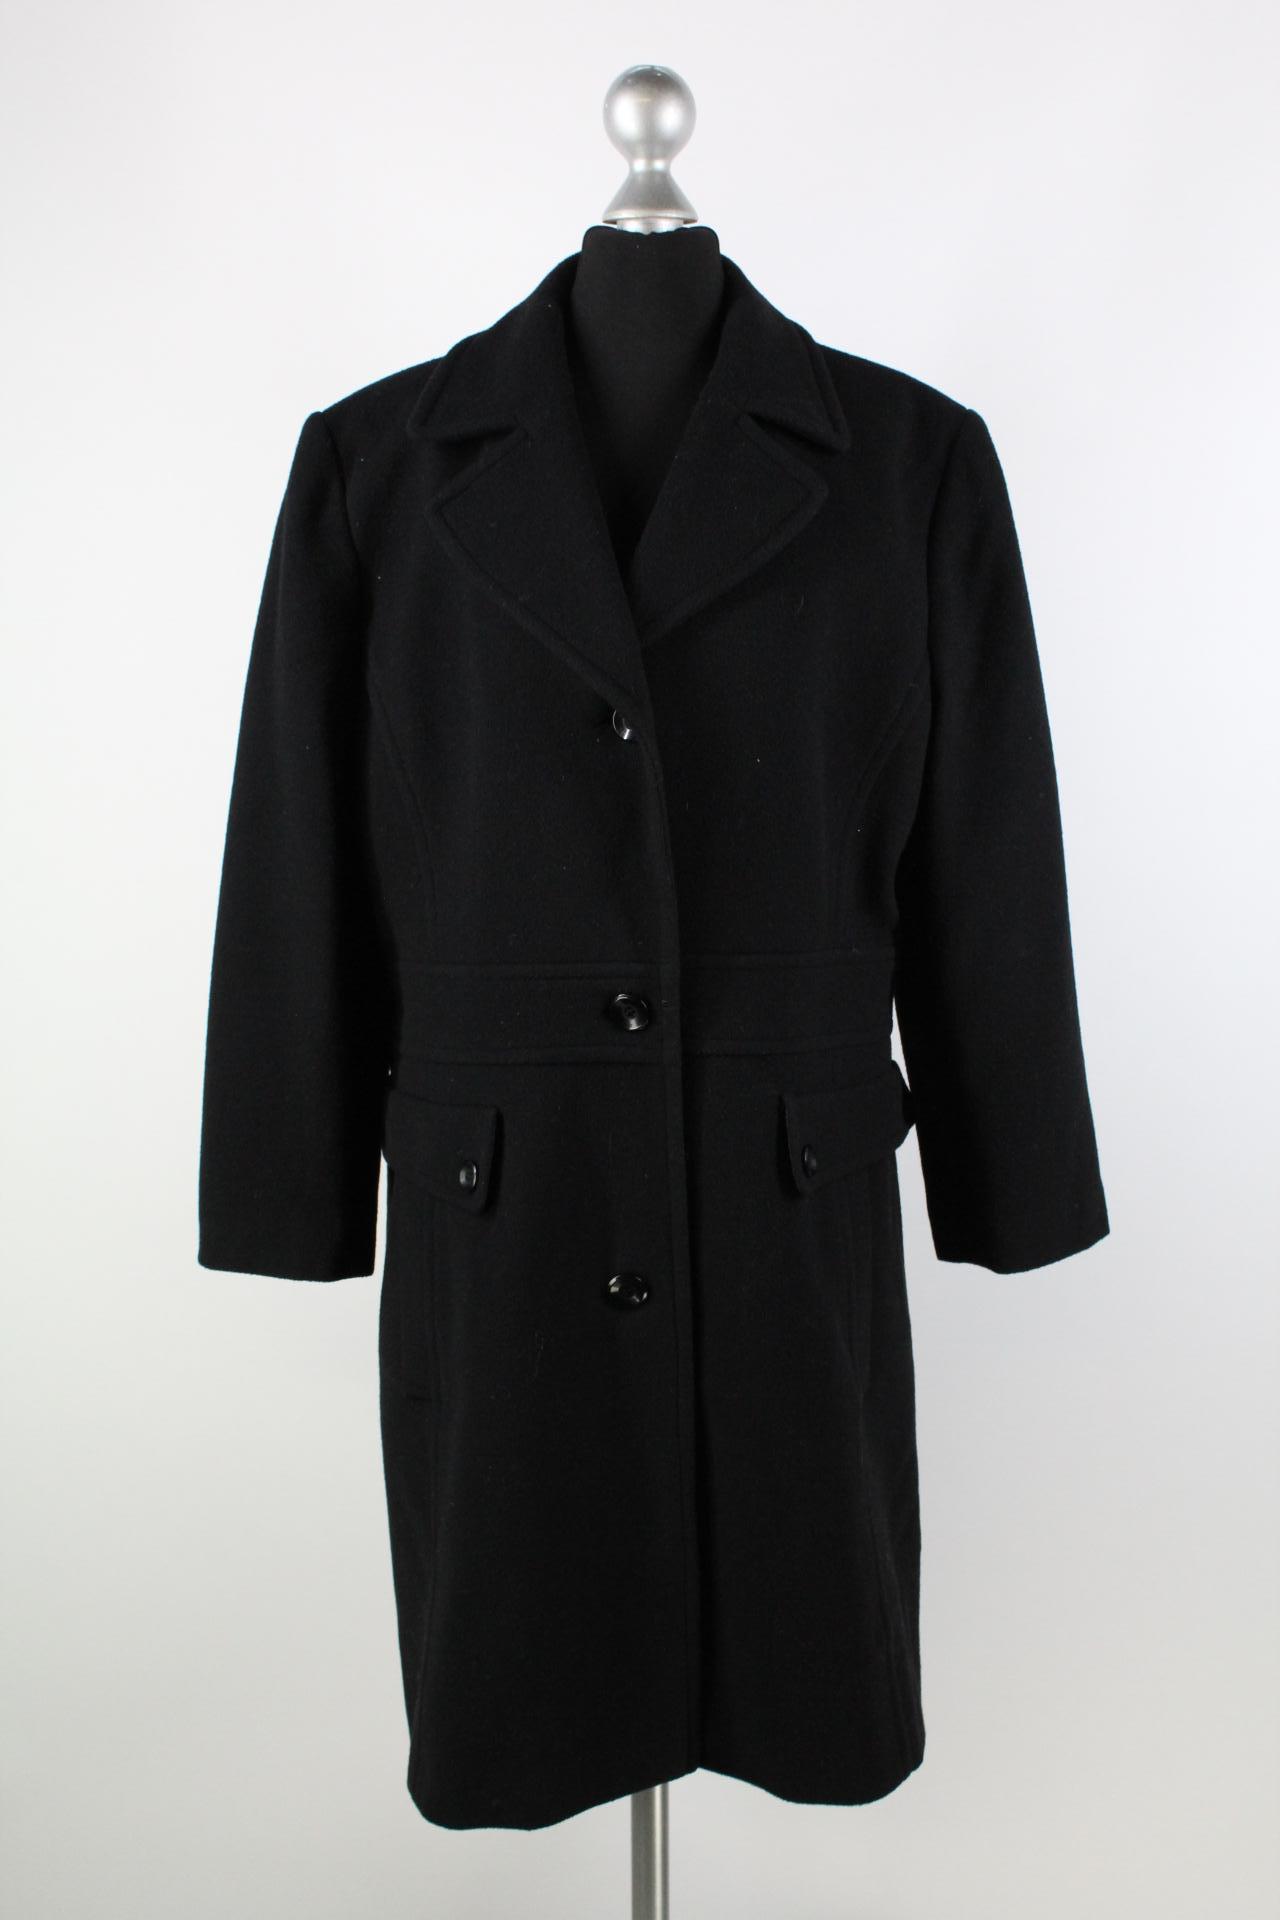 Authentic Damen-Mantel schwarz Größe 40